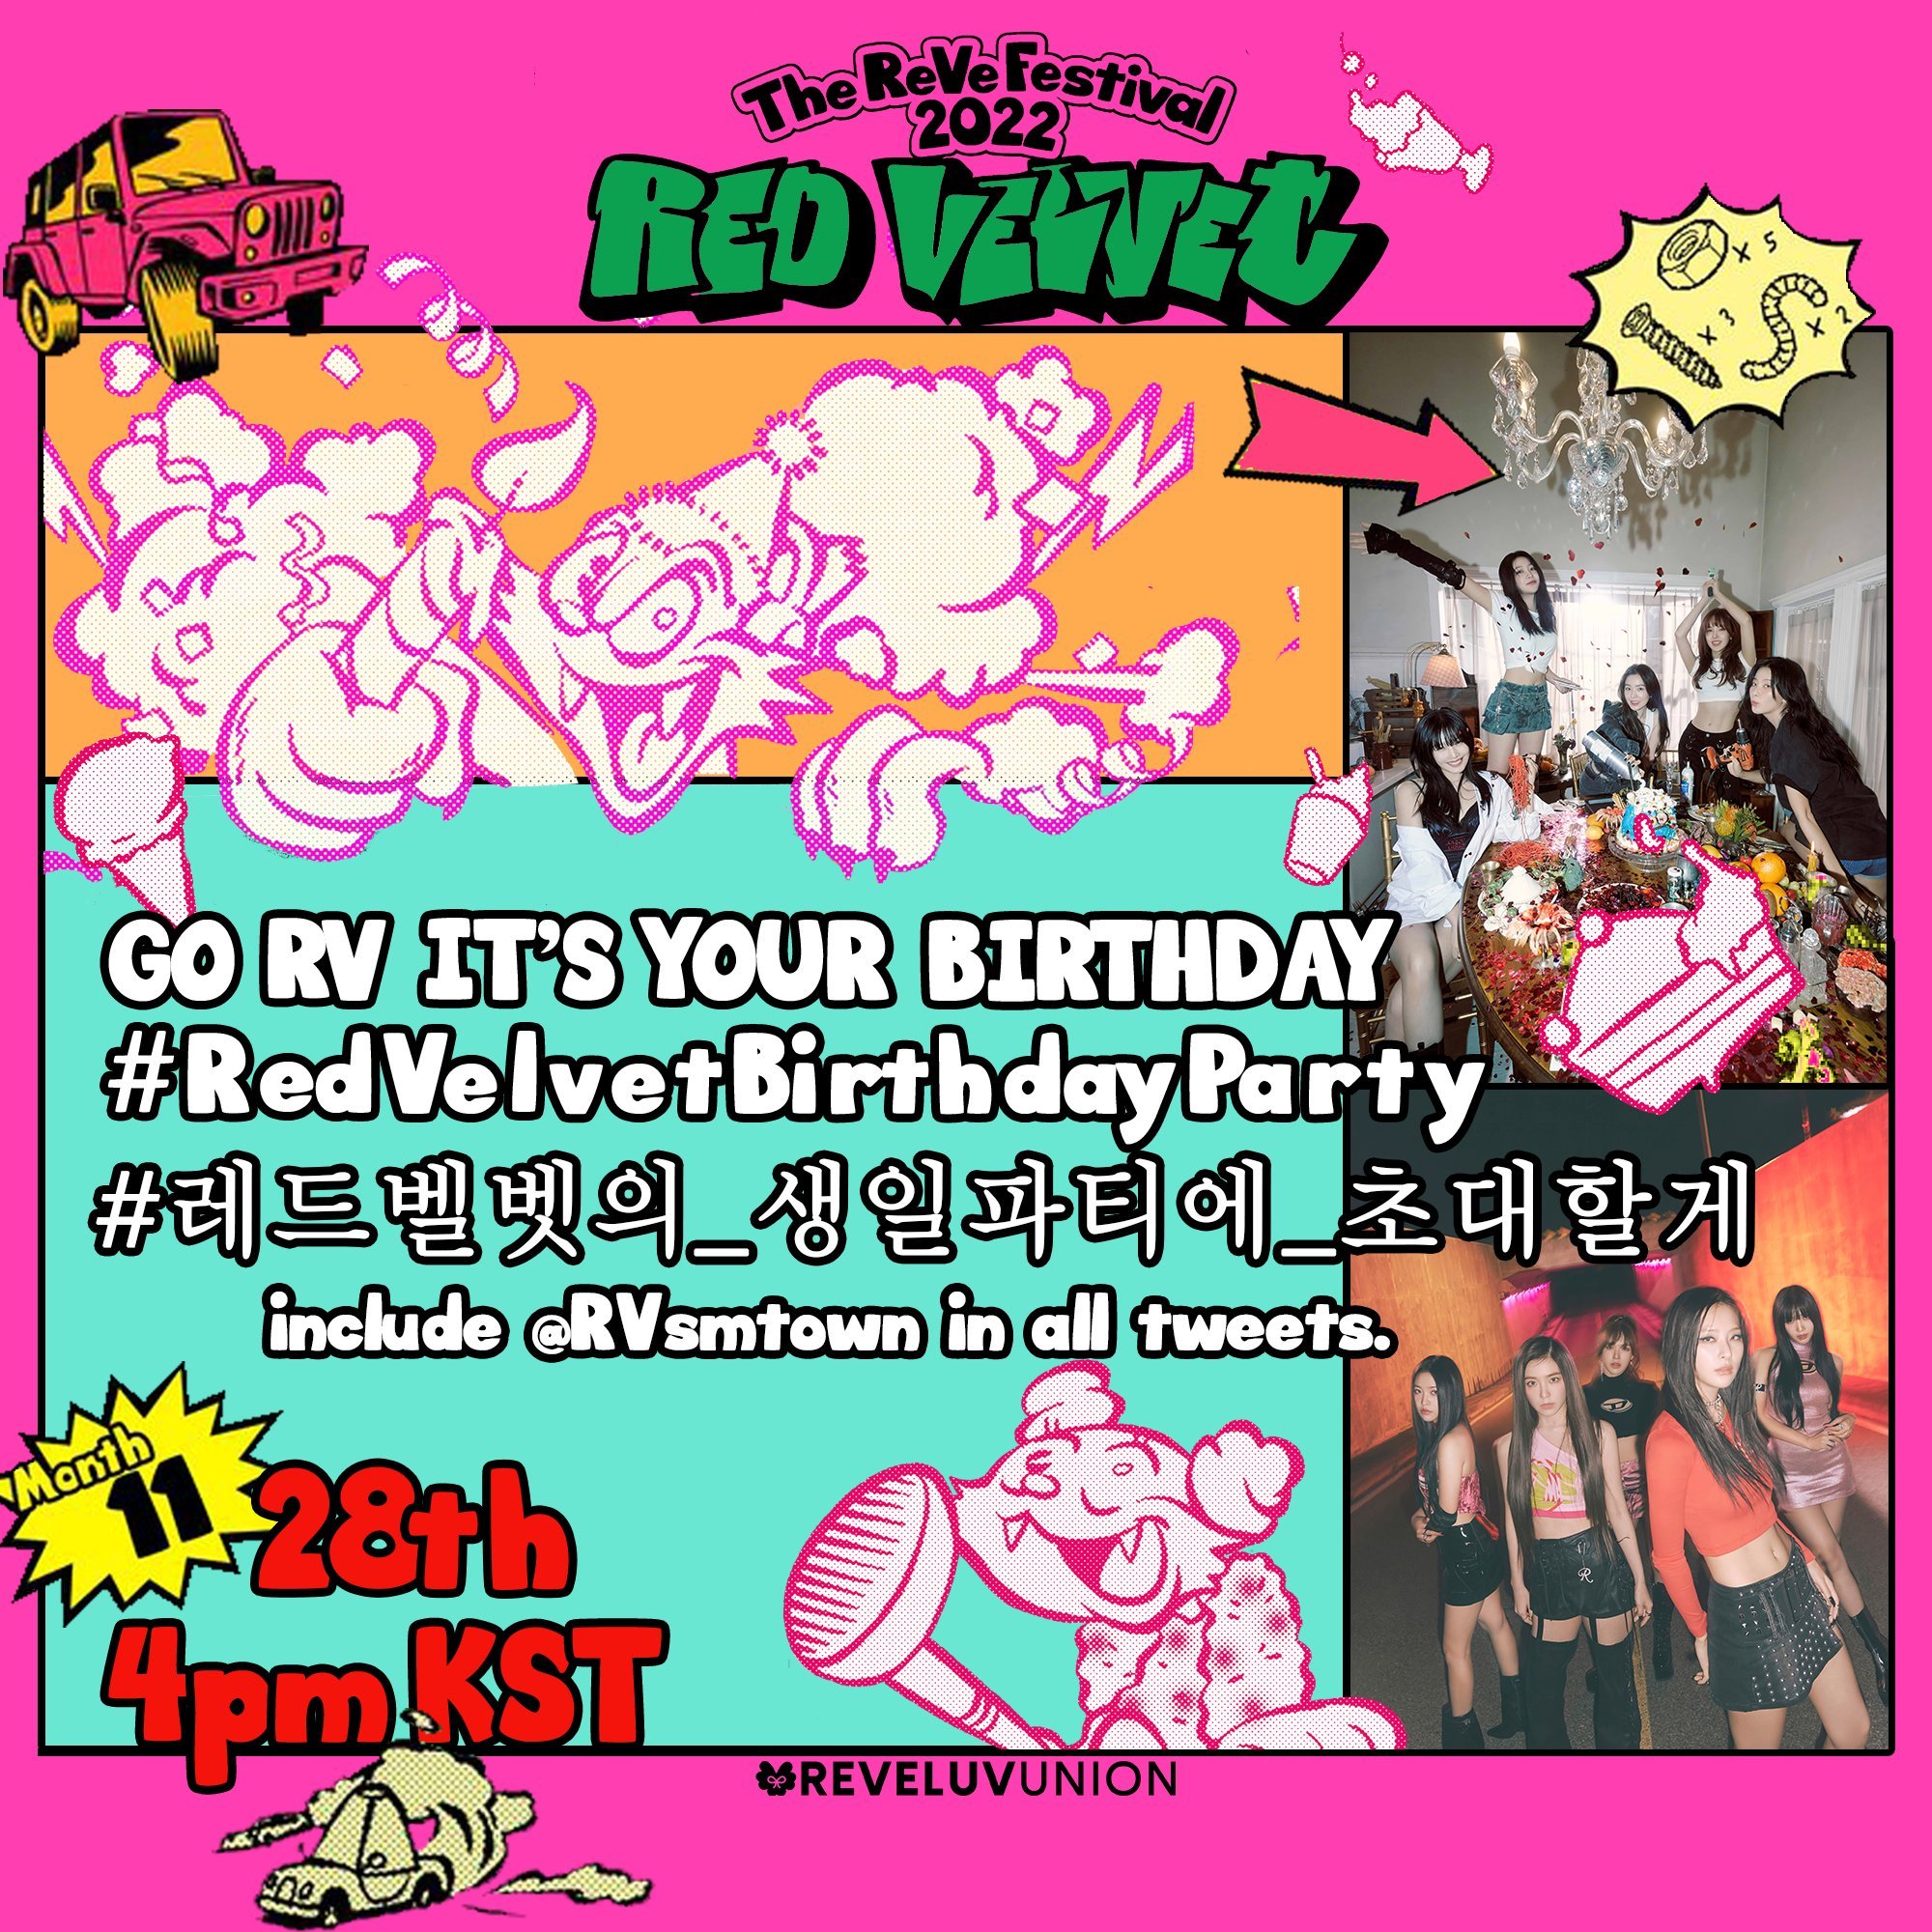 The Red Velvet released a mini album-The ReVe Festival-Birthday.